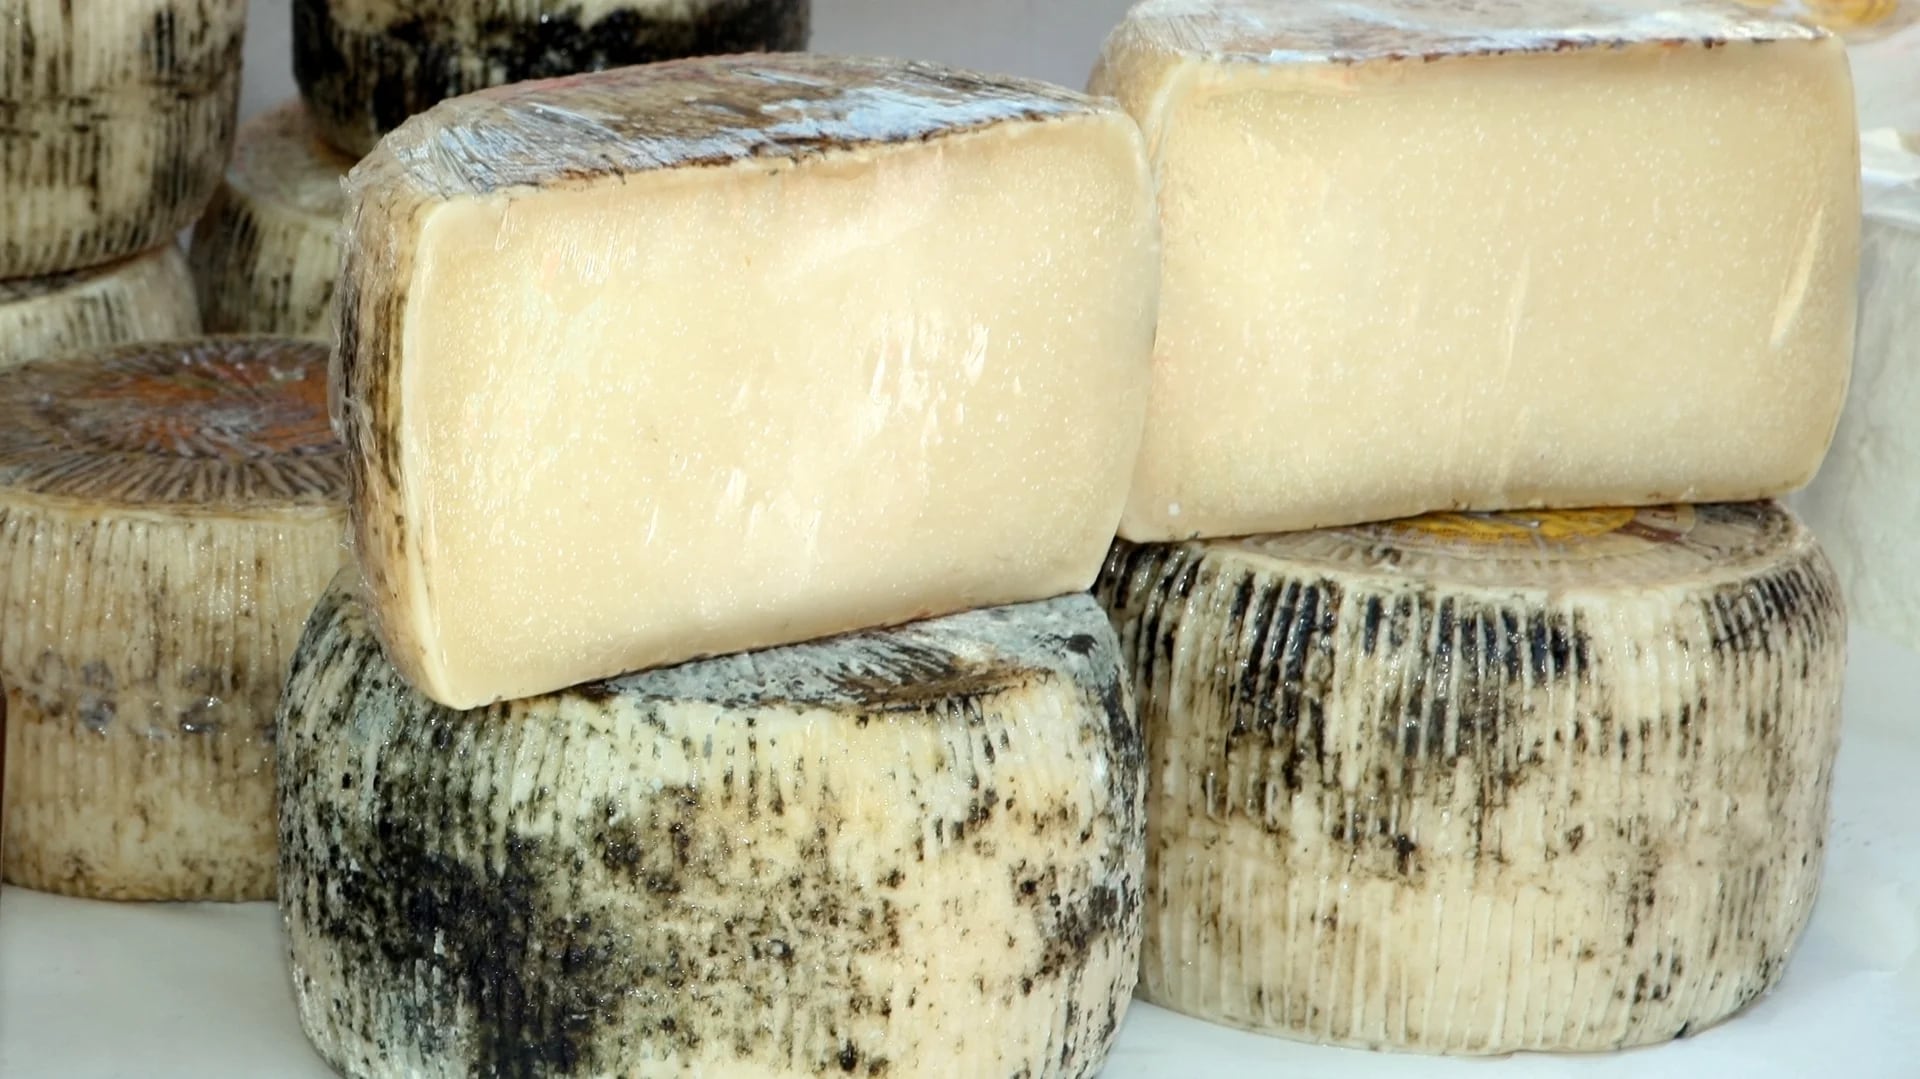 Los pobladores poseen altos niveles de longevidad a pesar de seguir una dieta elevada en queso y grasas saturadas (iStock)